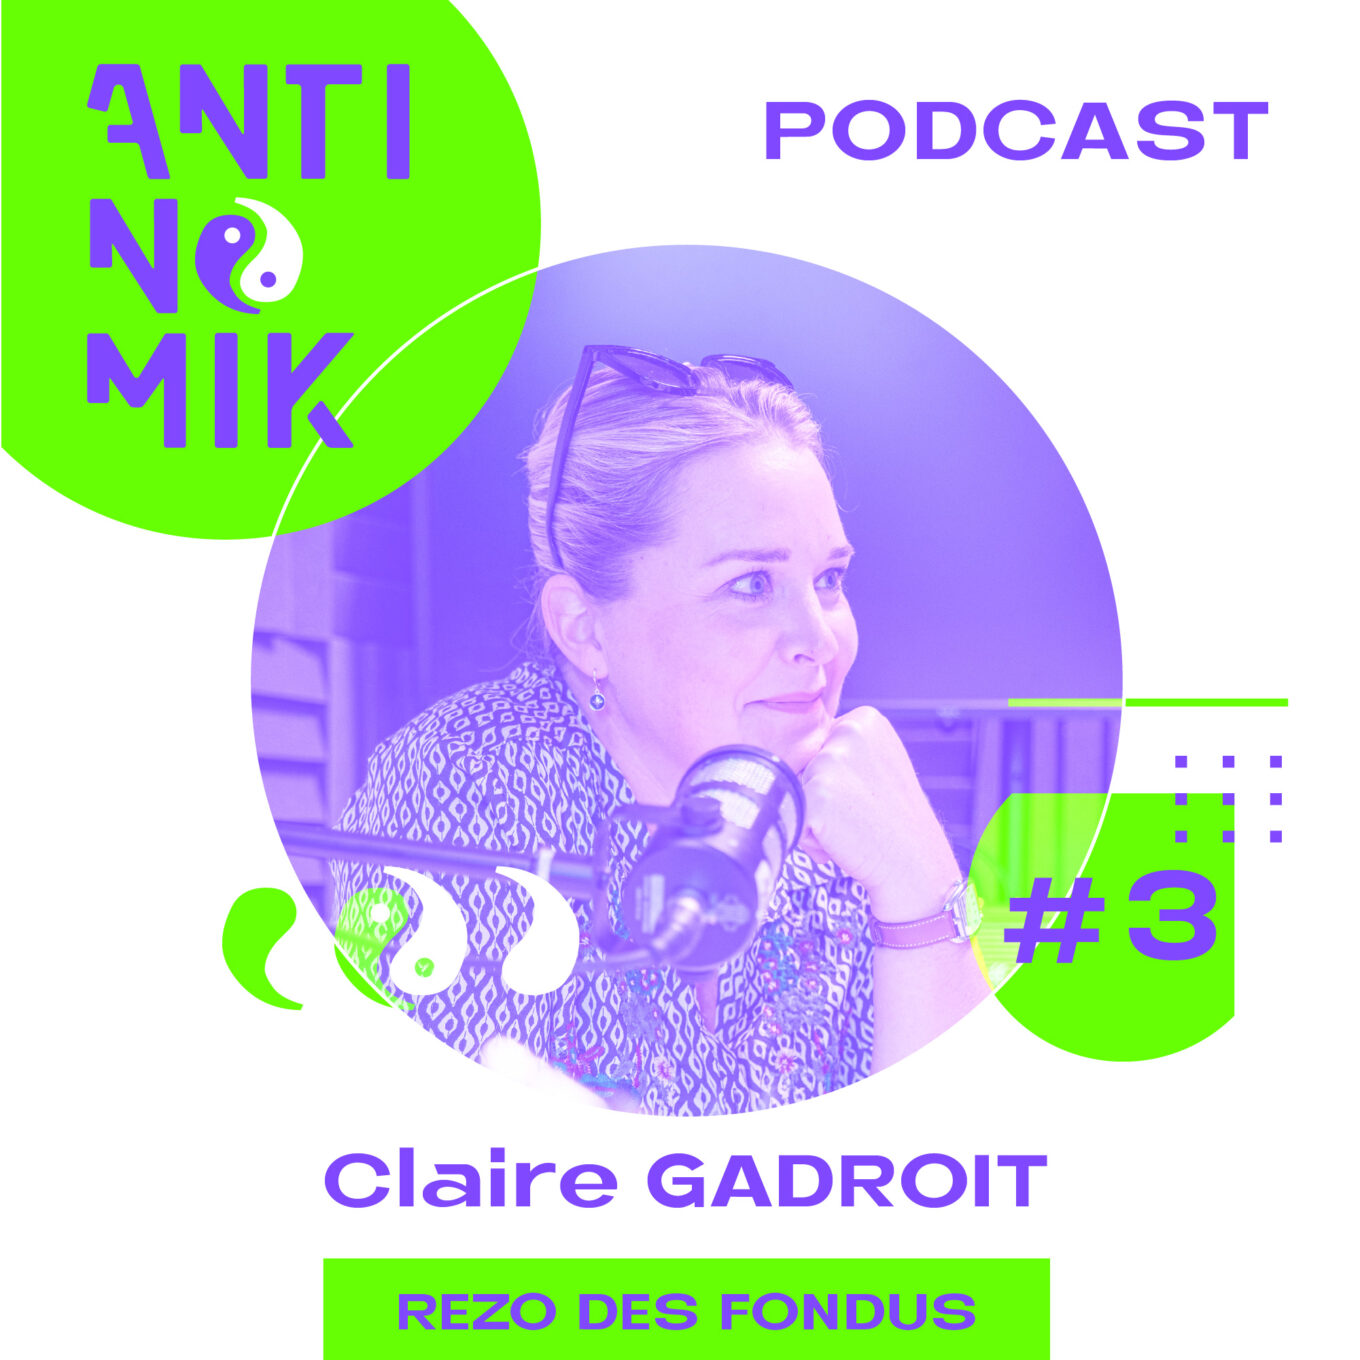 Claire GADROIT - Mobile